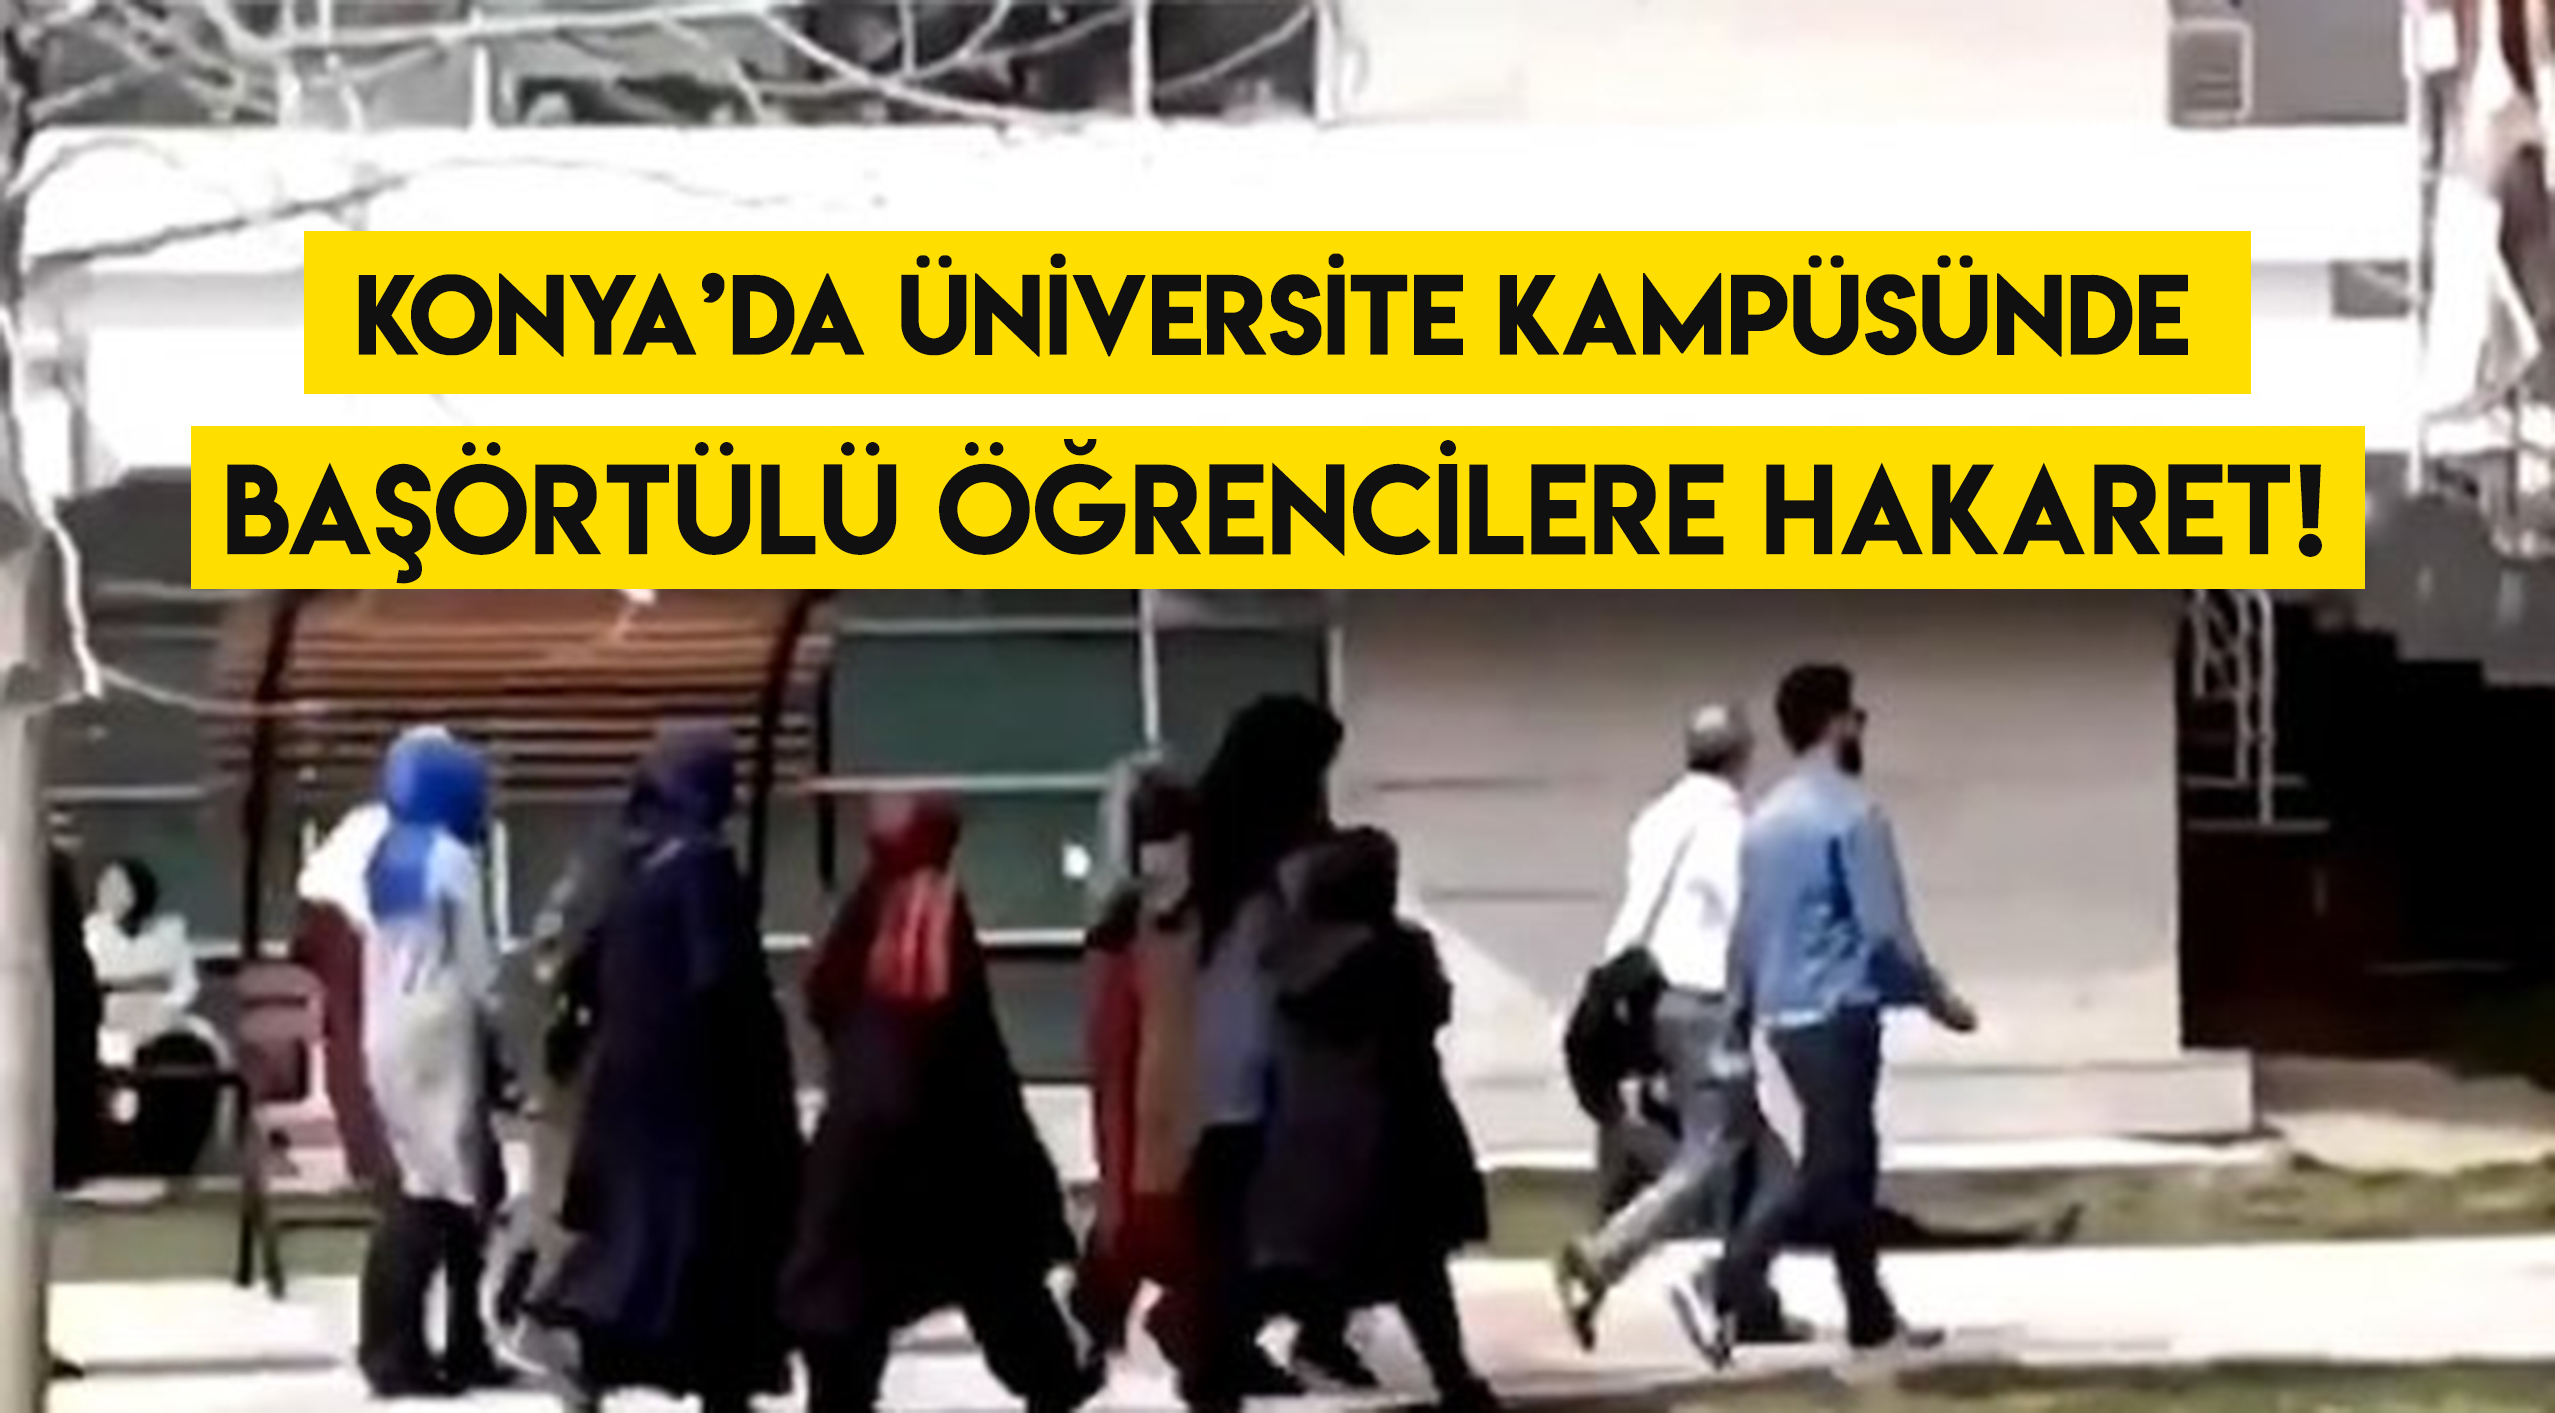 Konya’da Bir Üniversite Kampüsünde Başörtülü Öğrencilere İğrenç Hakaret